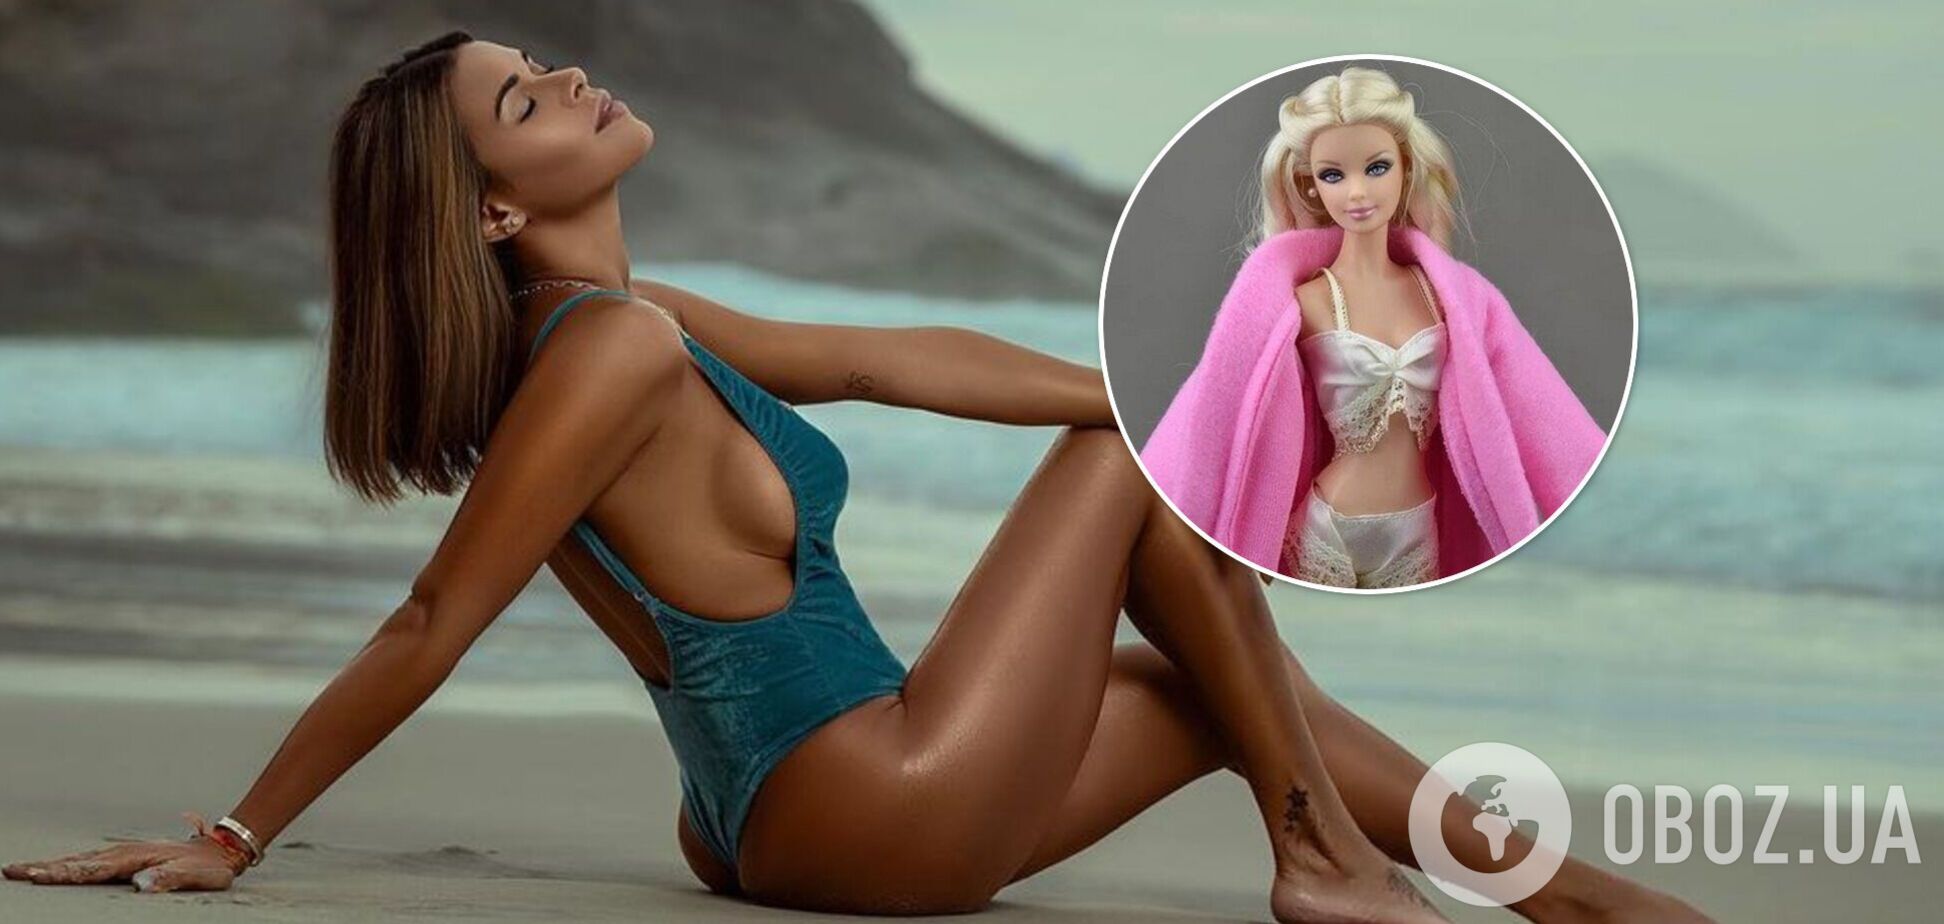 Модель Playboy, пропагандирующая мастурбацию, сделала себе 'талию куклы Барби'. Фото